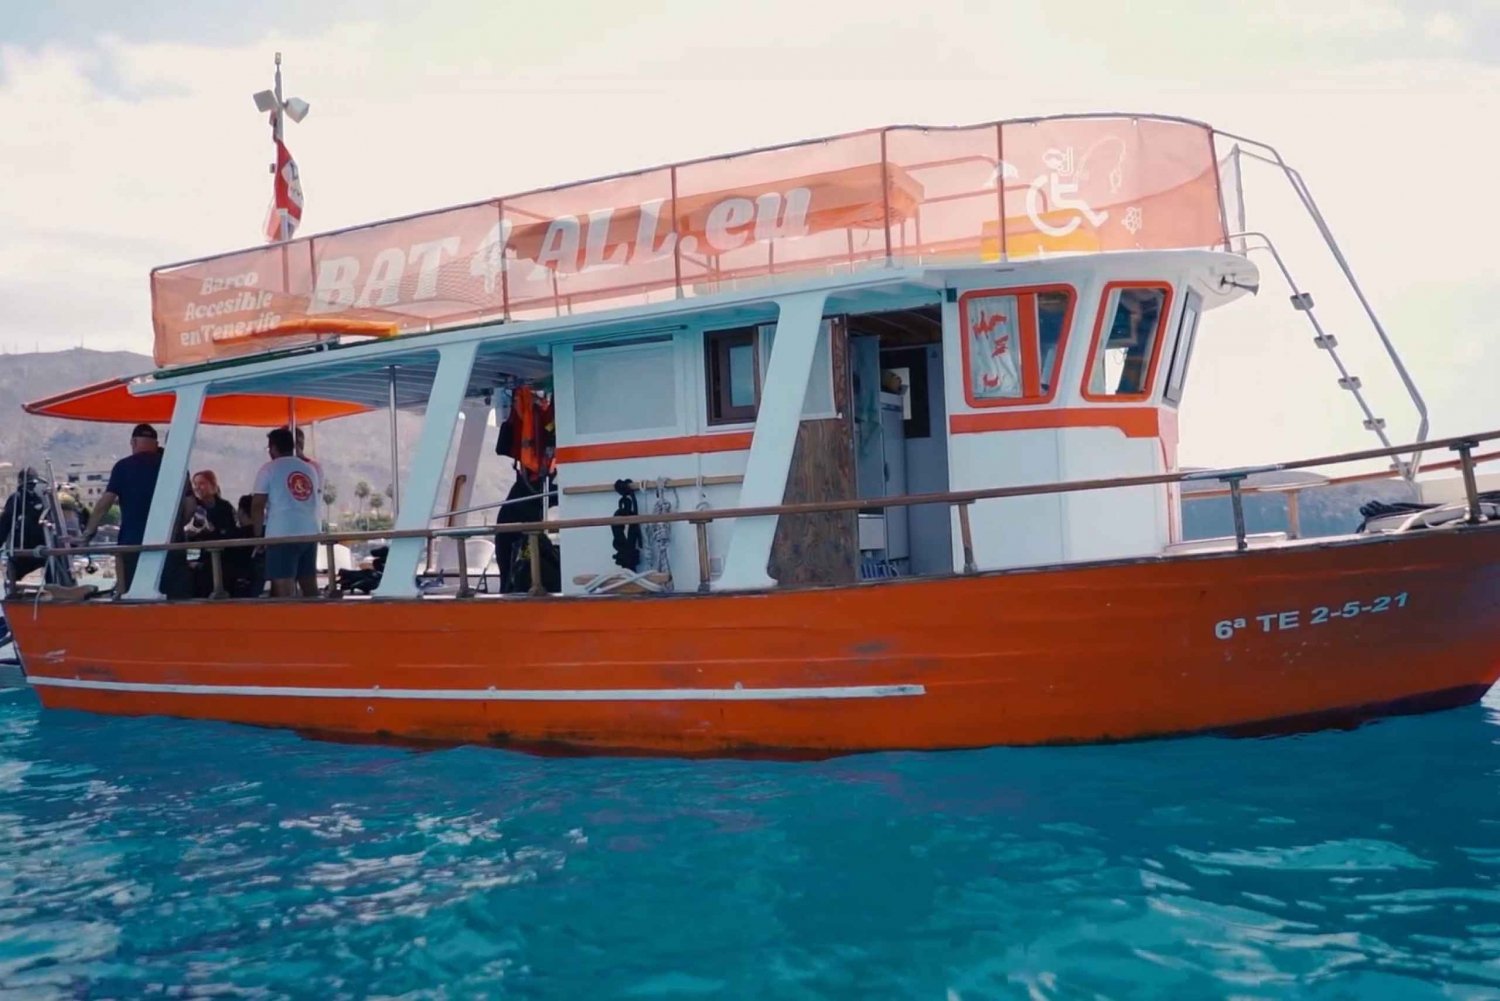 3H Tour particular ou compartilhado para um barco acessível na Ilha Canária